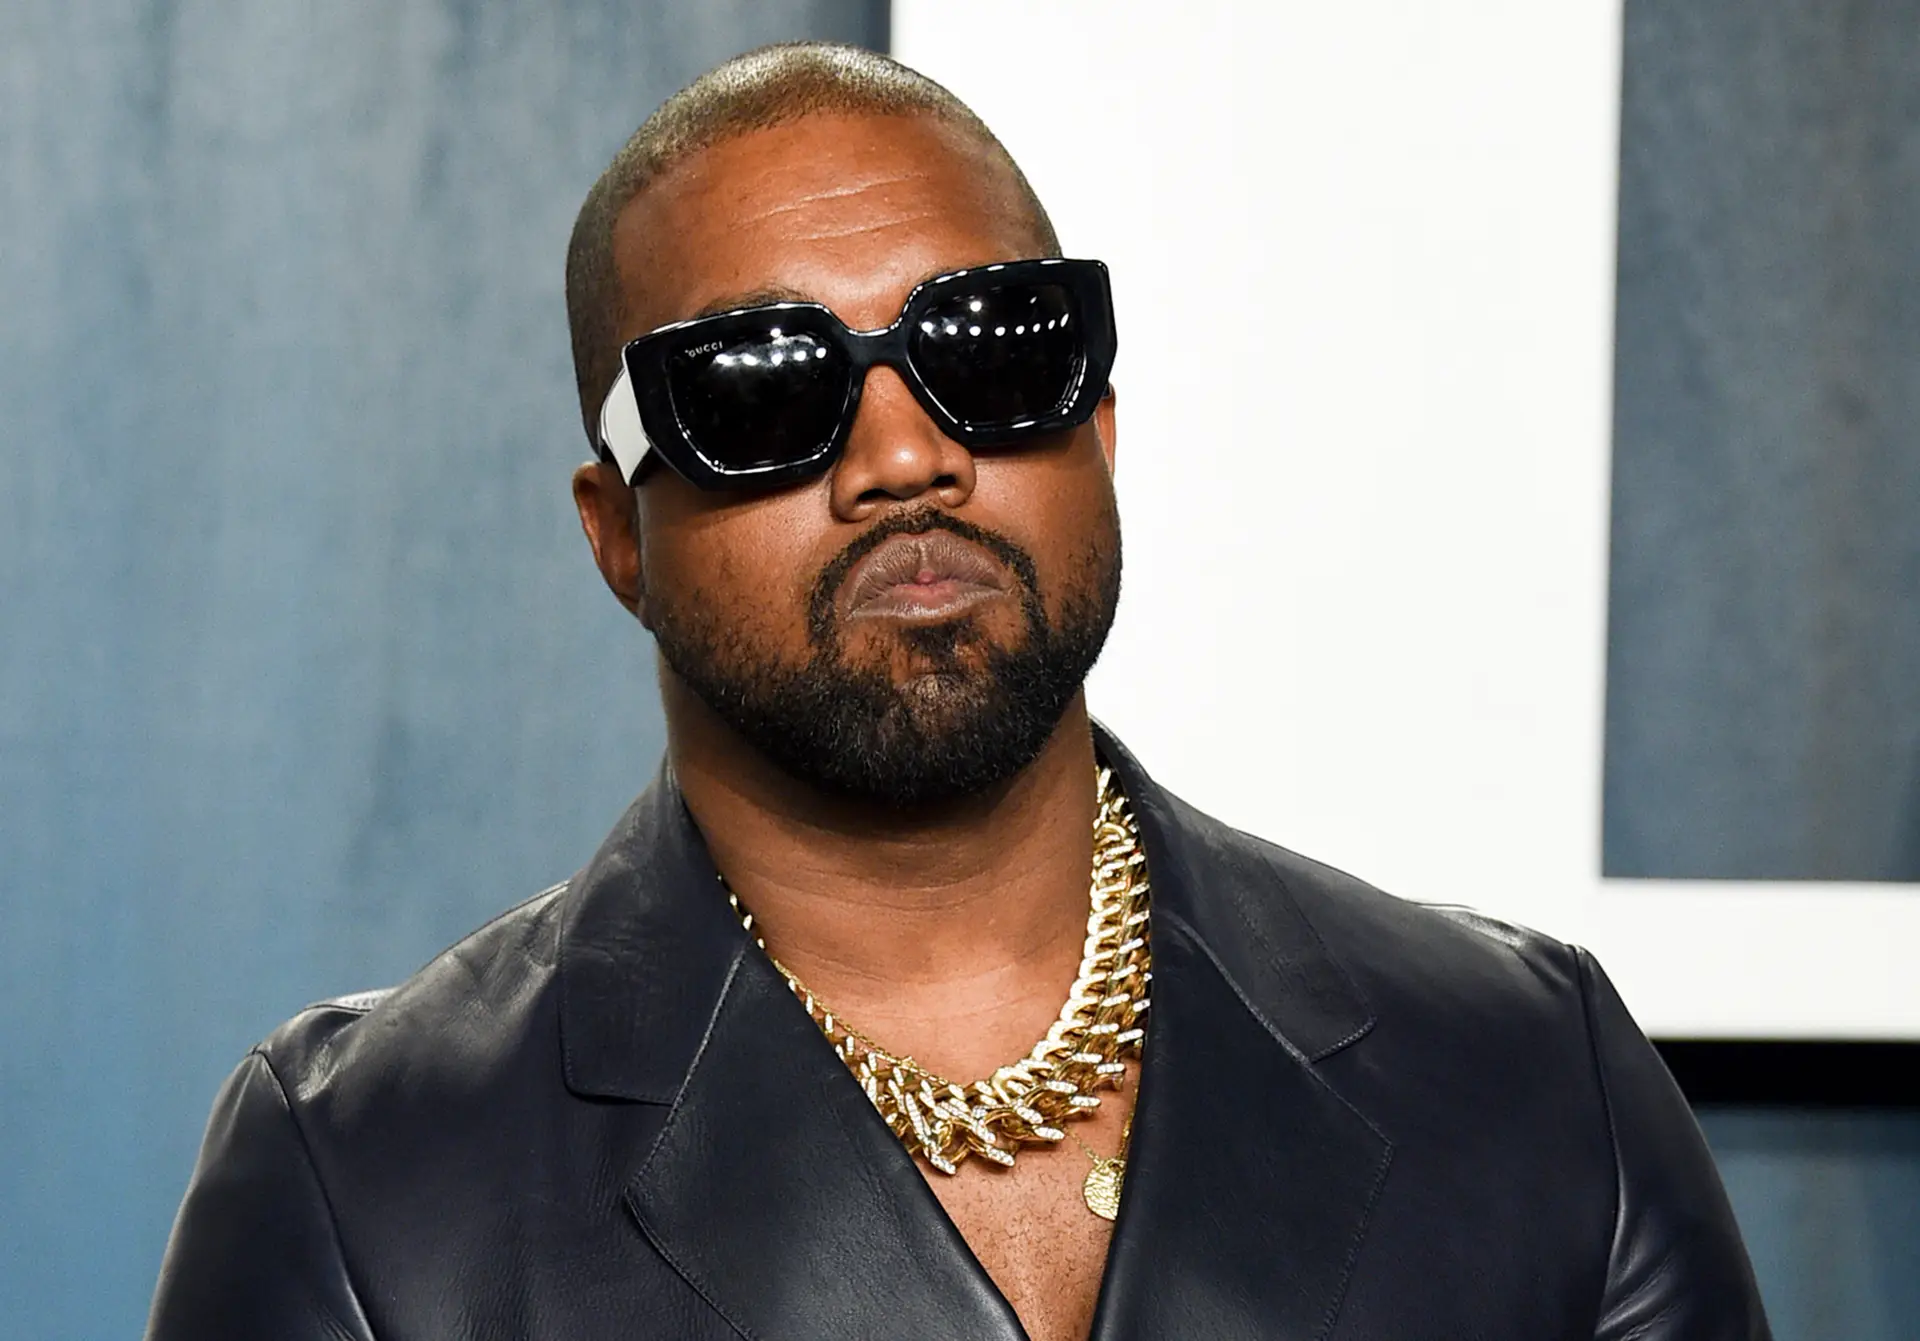 Documentário sobre Kanye West cancelado devido comentários antissemitas